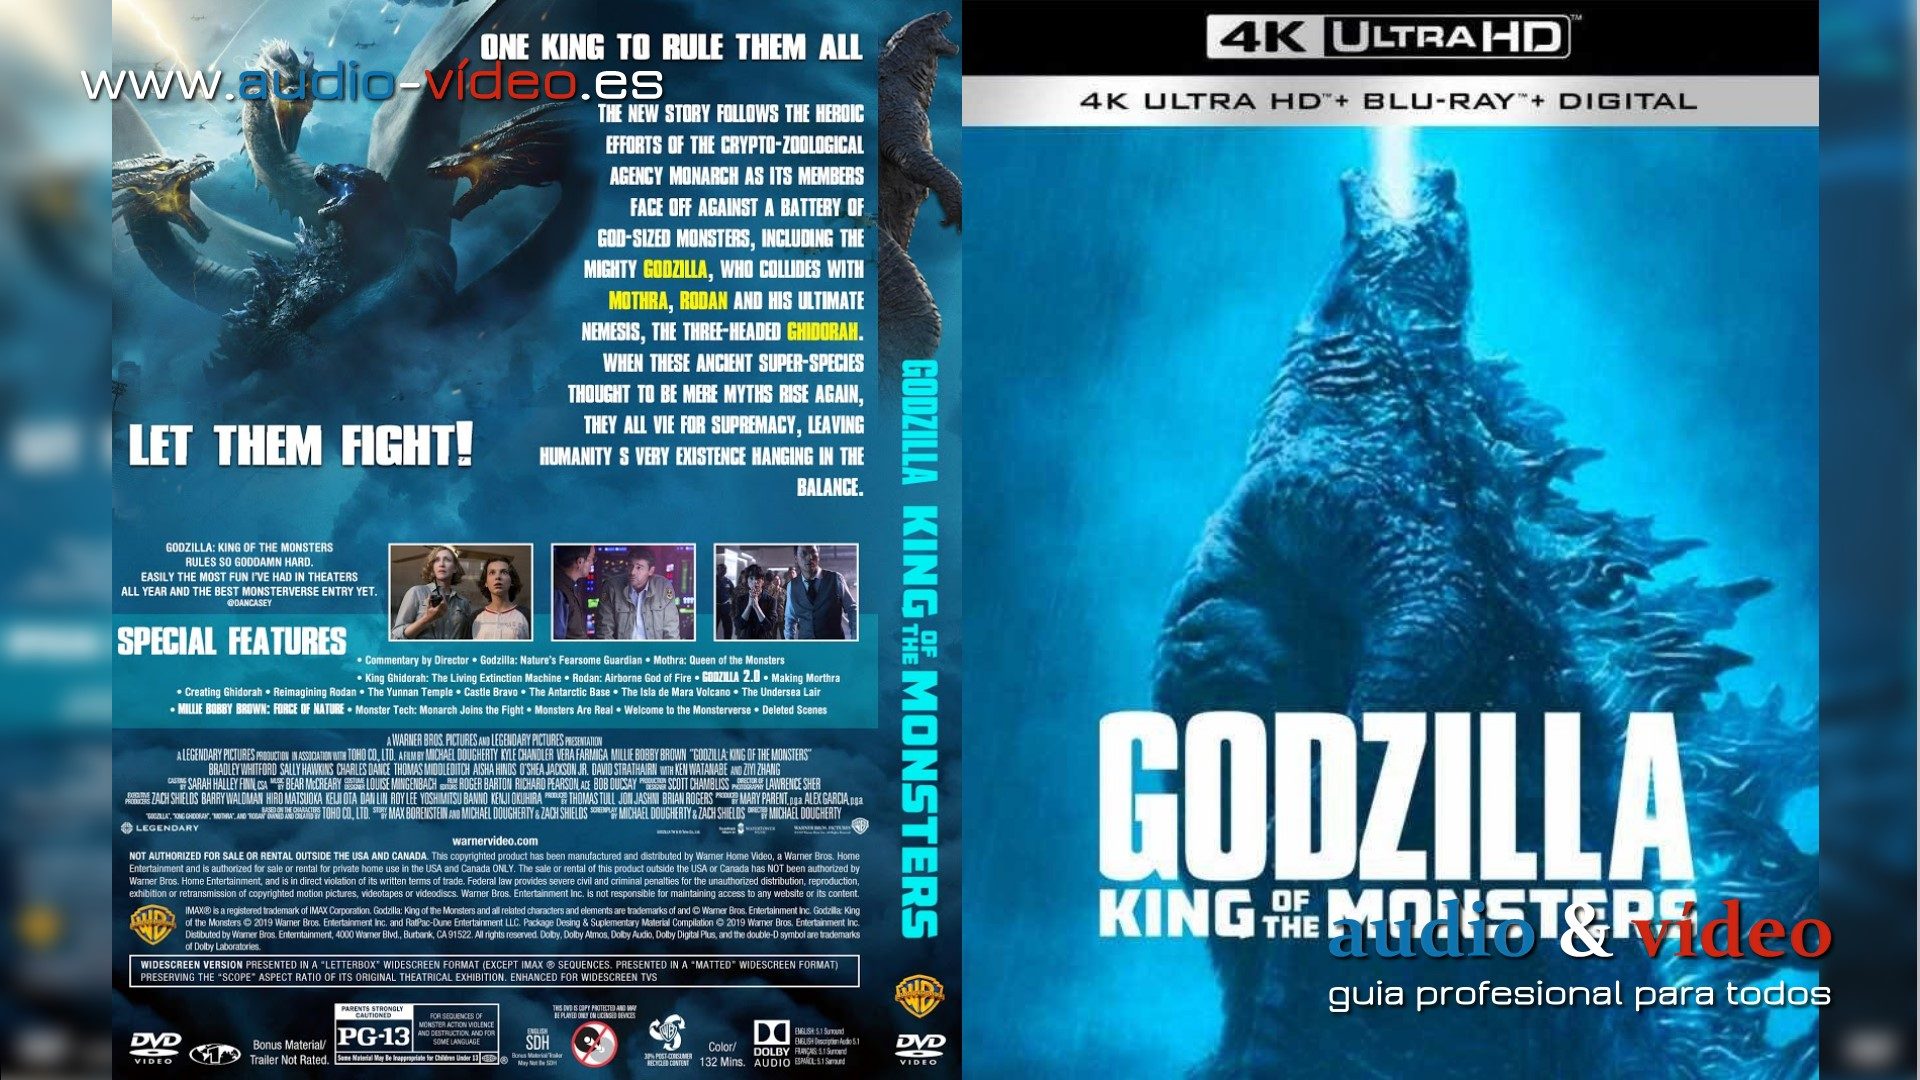 Godzilla: El rey de los monstruos - 4K UHD Blu-ray -Película